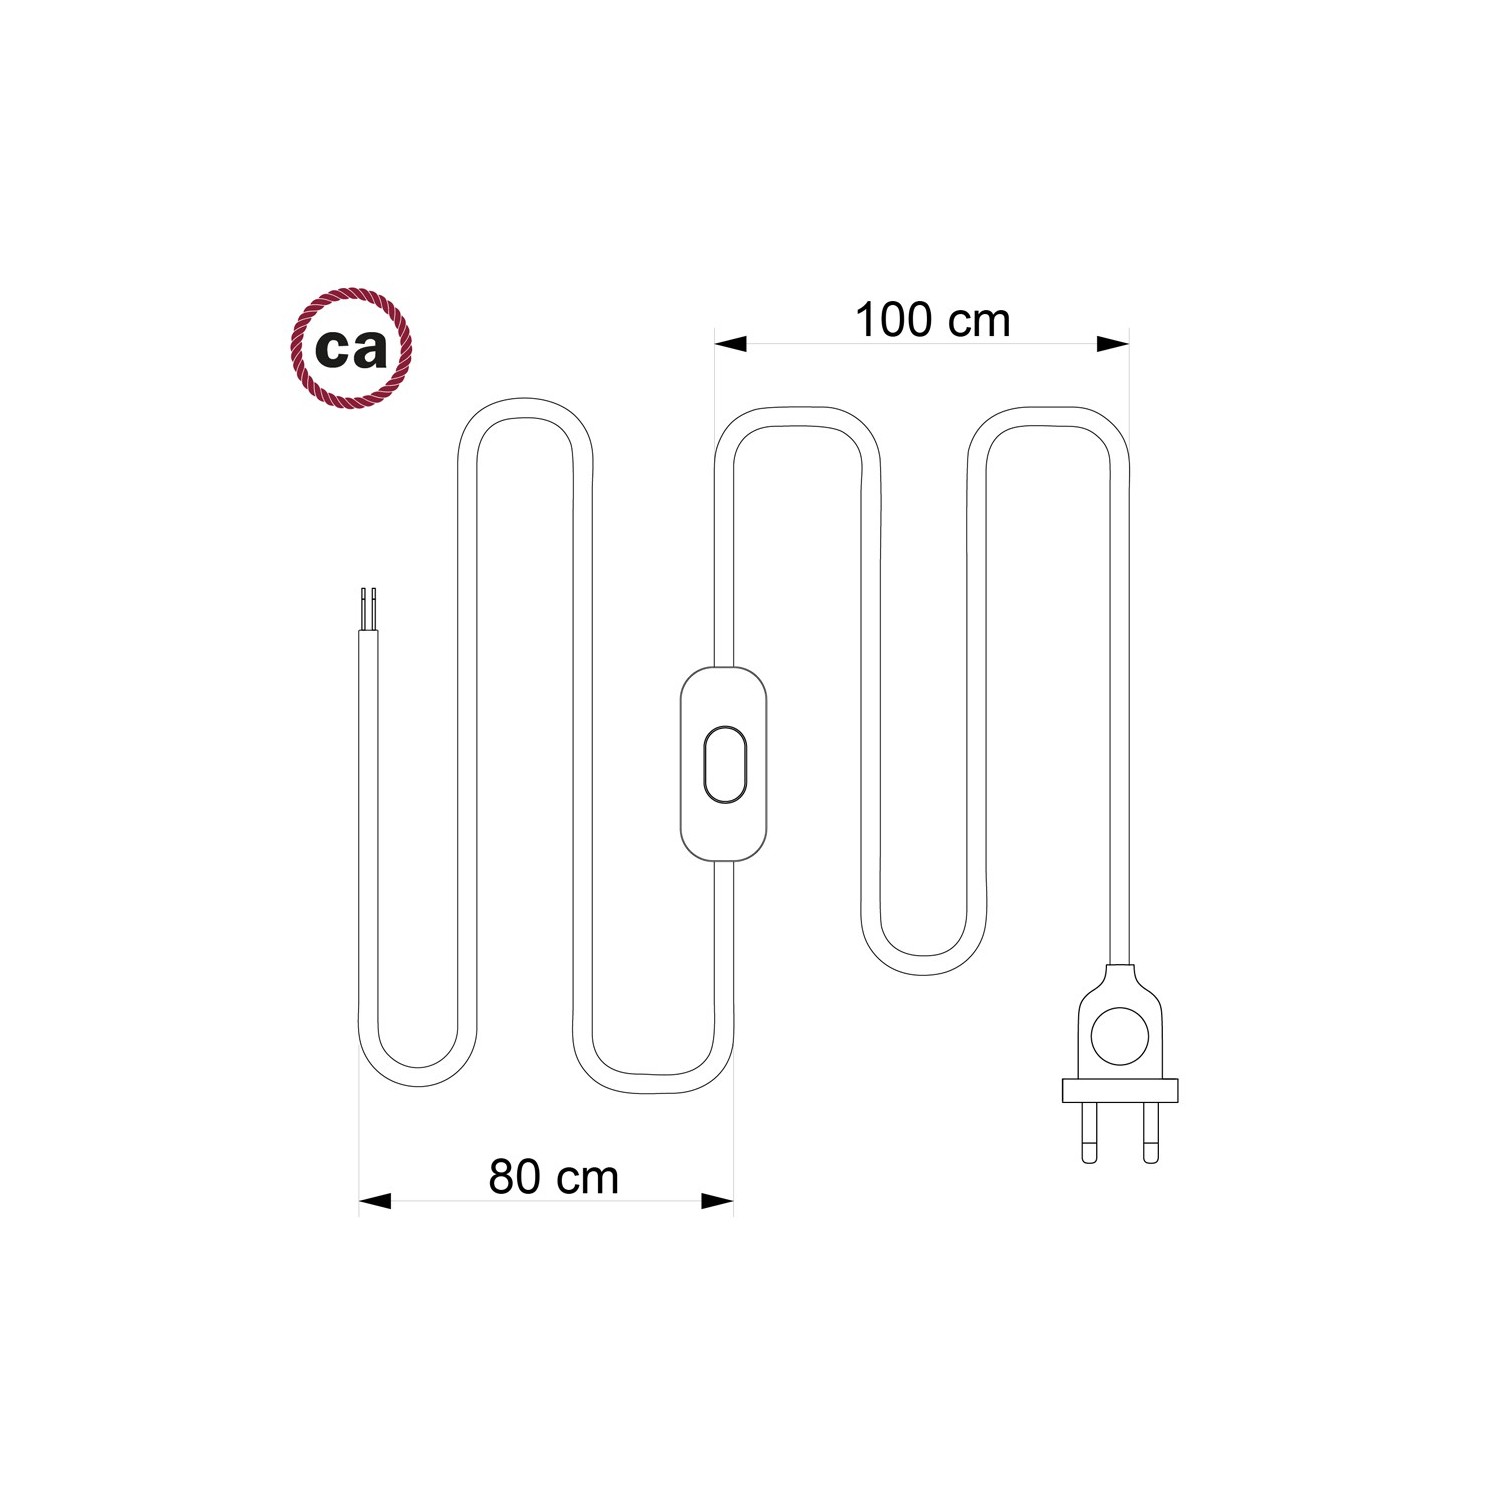 Cordon pour lampe, câble RM14 Effet Soie Violet 1,80 m. Choisissez la couleur de la fiche et de l'interrupteur!